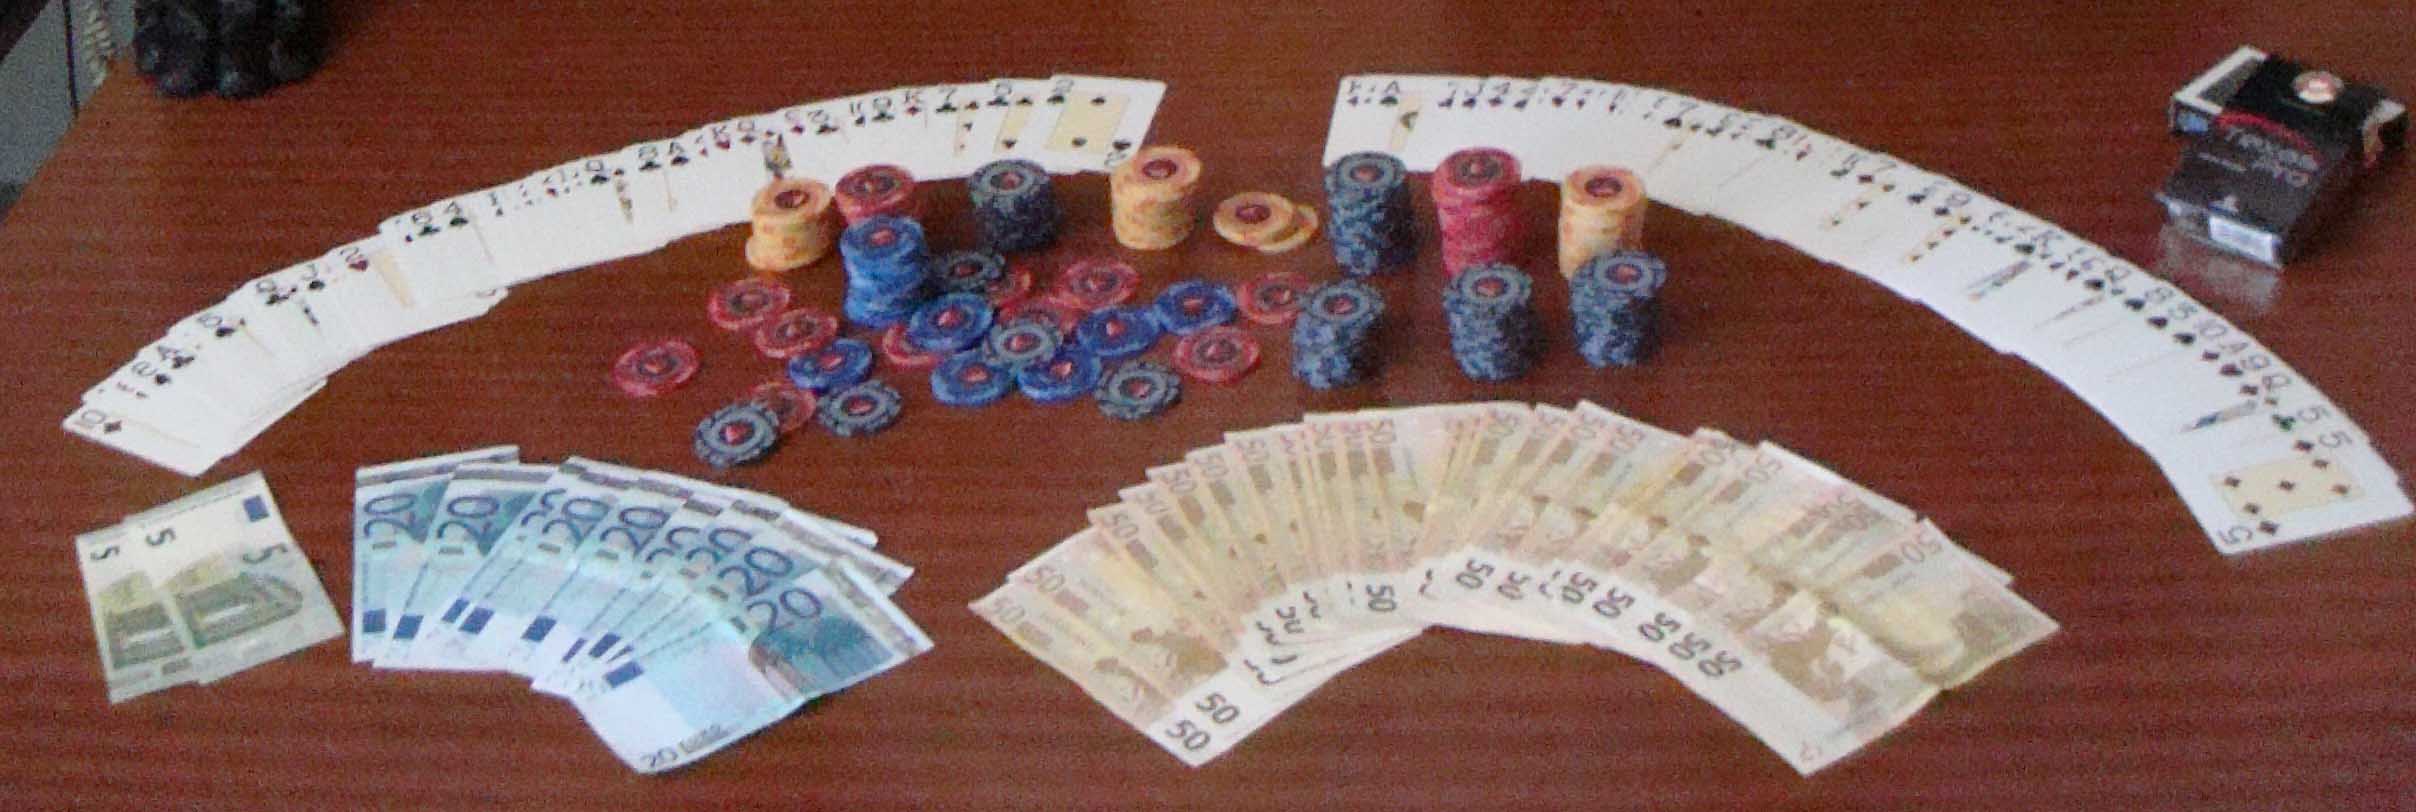 Bisca clandestina in circolo cittadino, denunciati 12 giocatori di poker